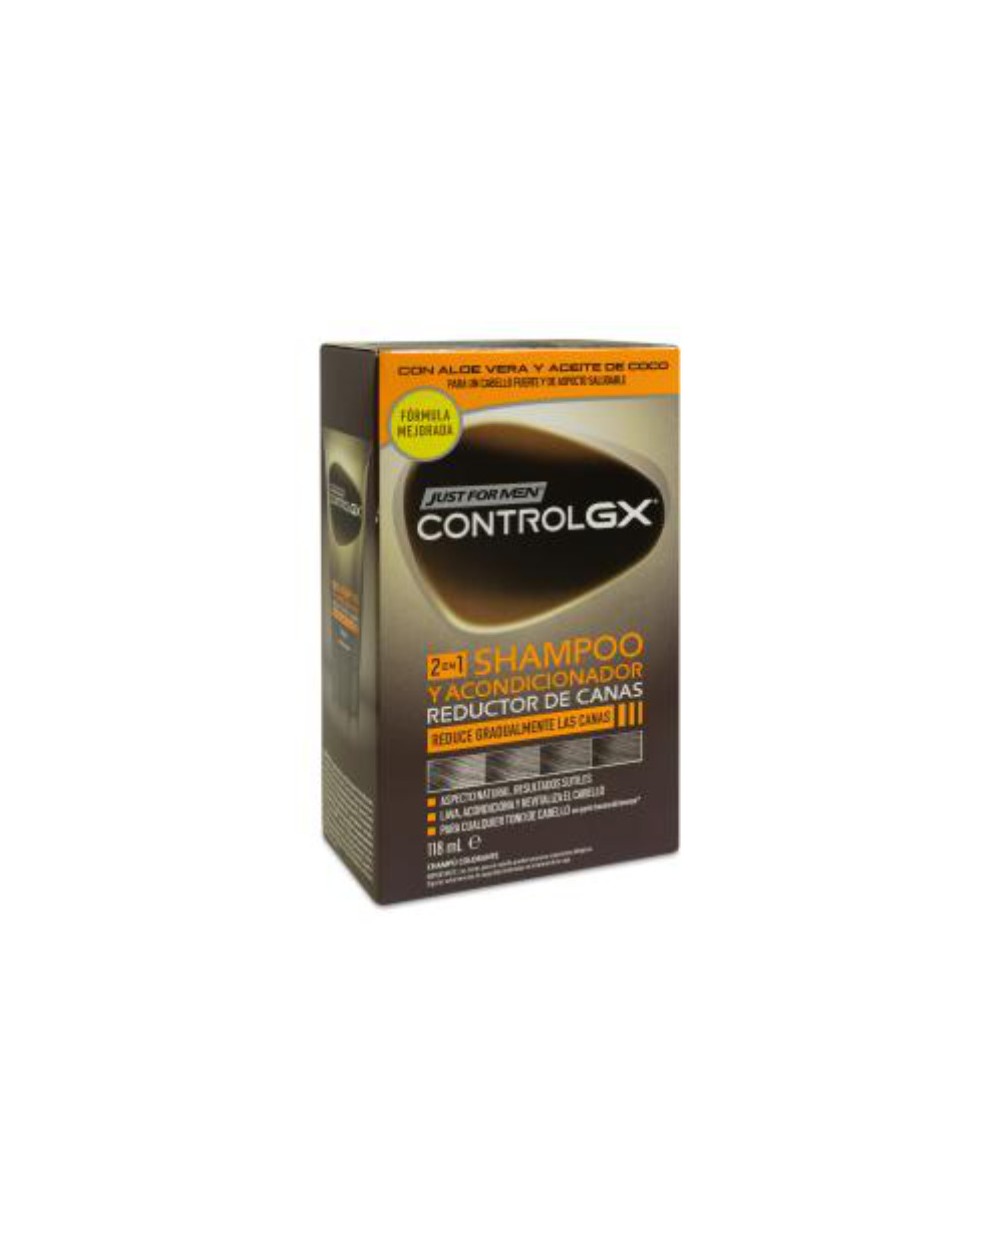 CONTROL GX 2 EN 1 CHAMPÚ Y ACONDICIONADOR REDUCTOR DE CANAS 118ML